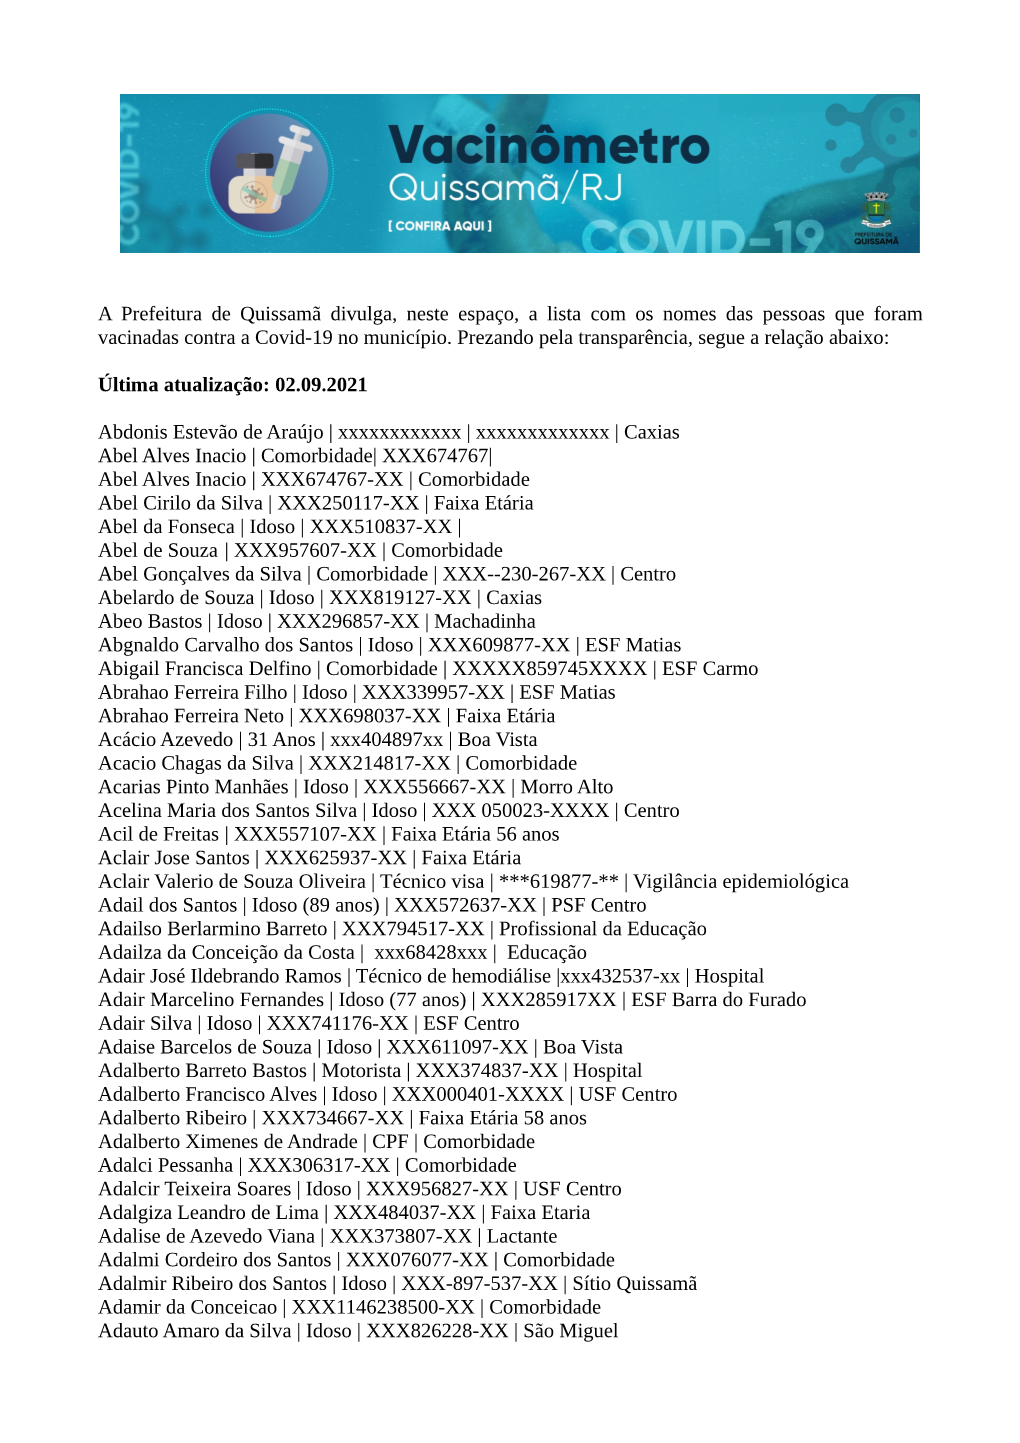 A Prefeitura De Quissamã Divulga, Neste Espaço, a Lista Com Os Nomes Das Pessoas Que Foram Vacinadas Contra a Covid-19 No Município